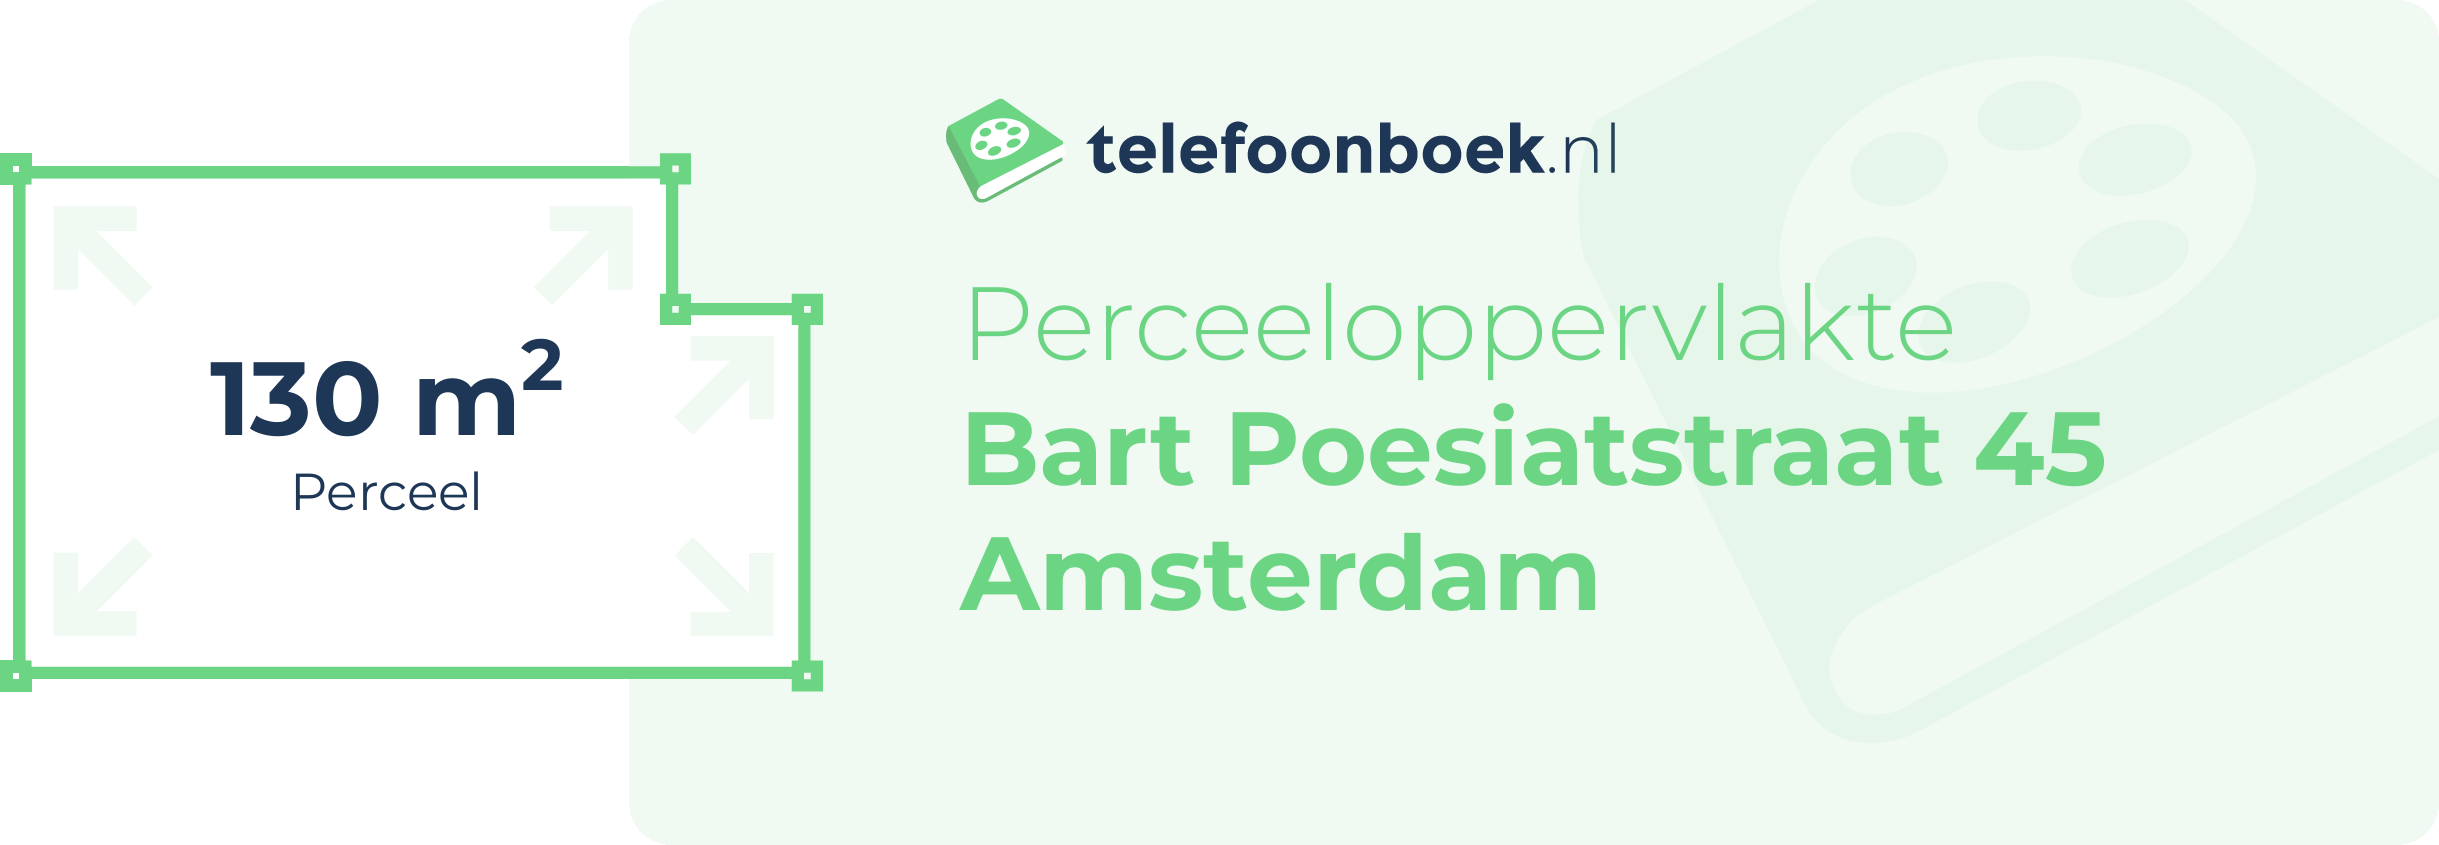 Perceeloppervlakte Bart Poesiatstraat 45 Amsterdam